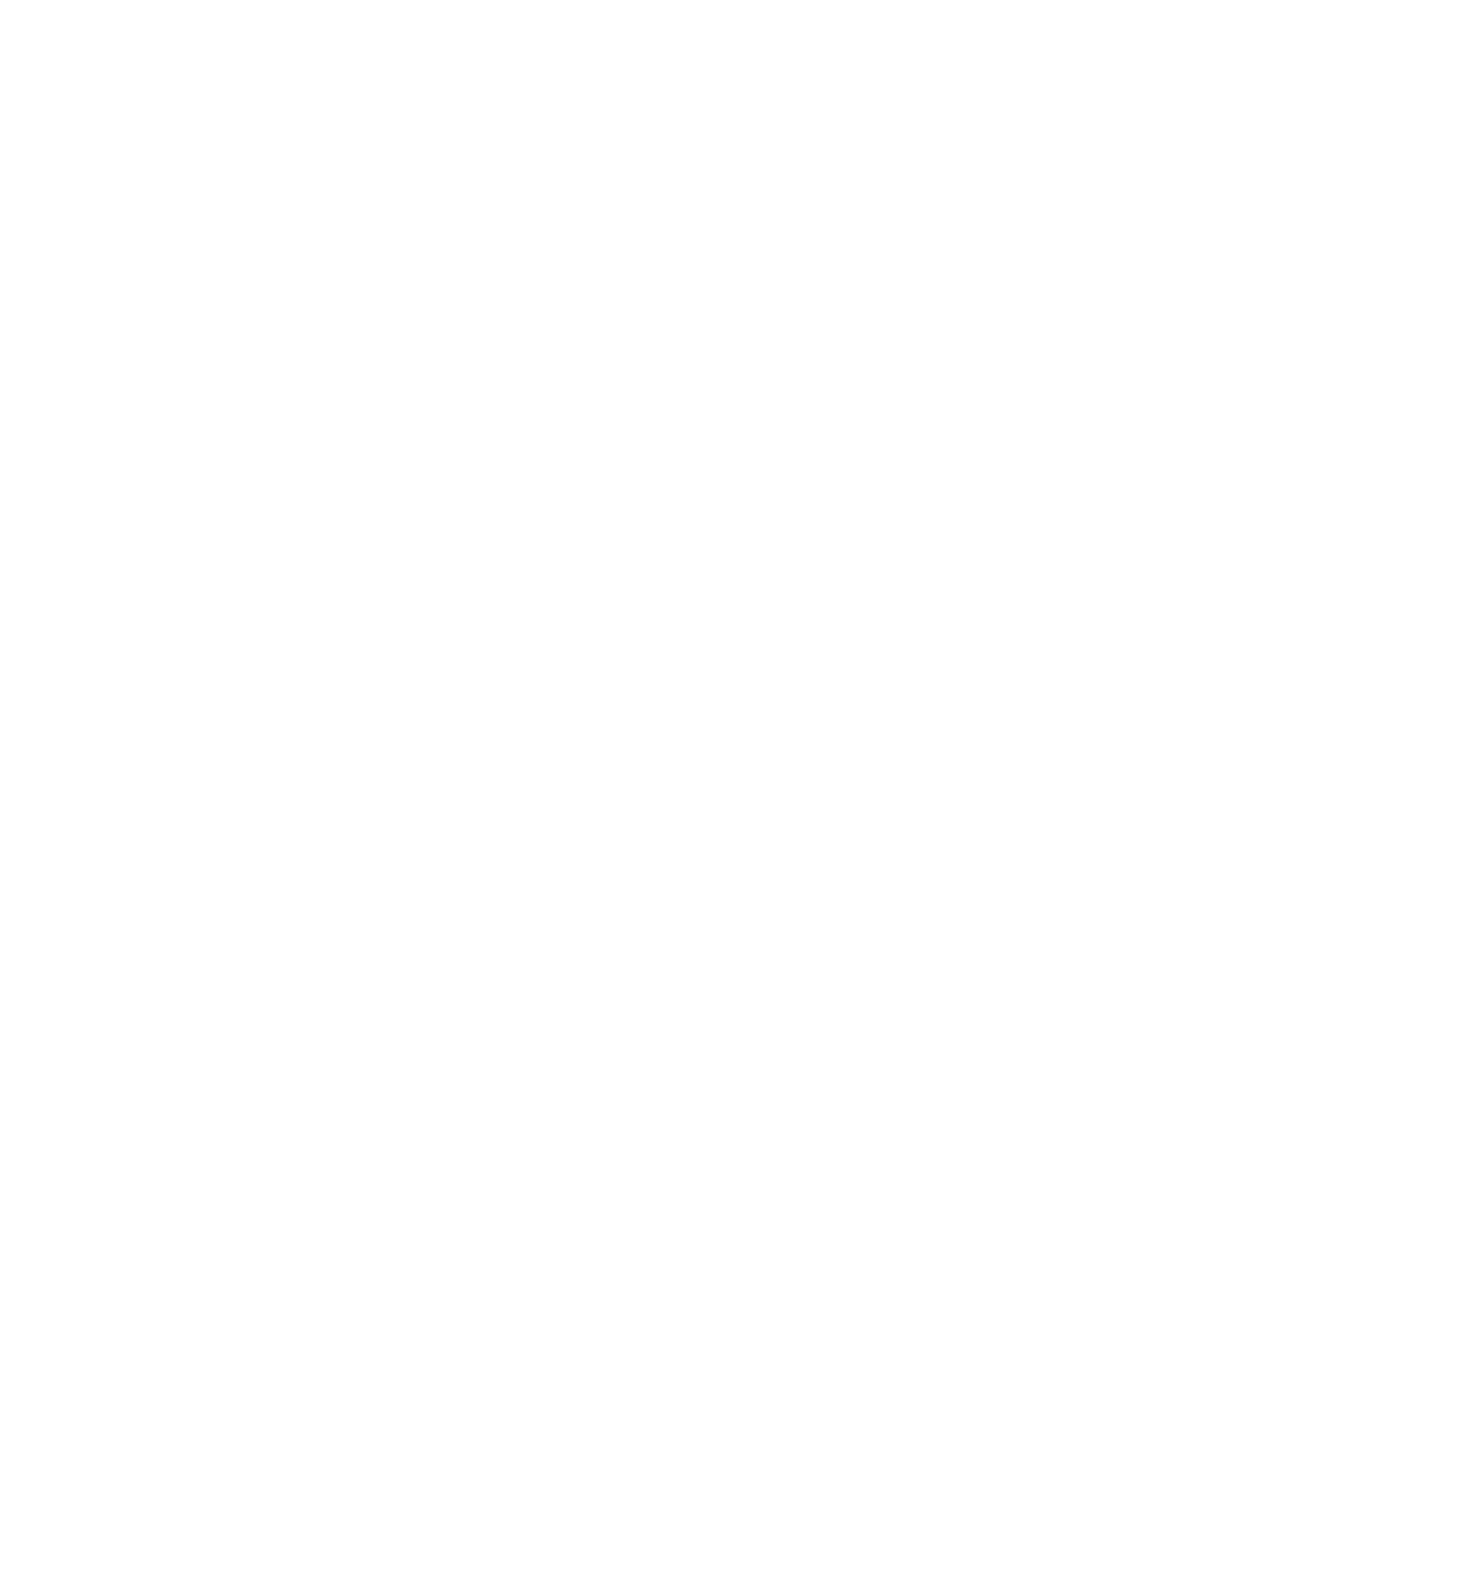 Xencor logo pour fonds sombres (PNG transparent)